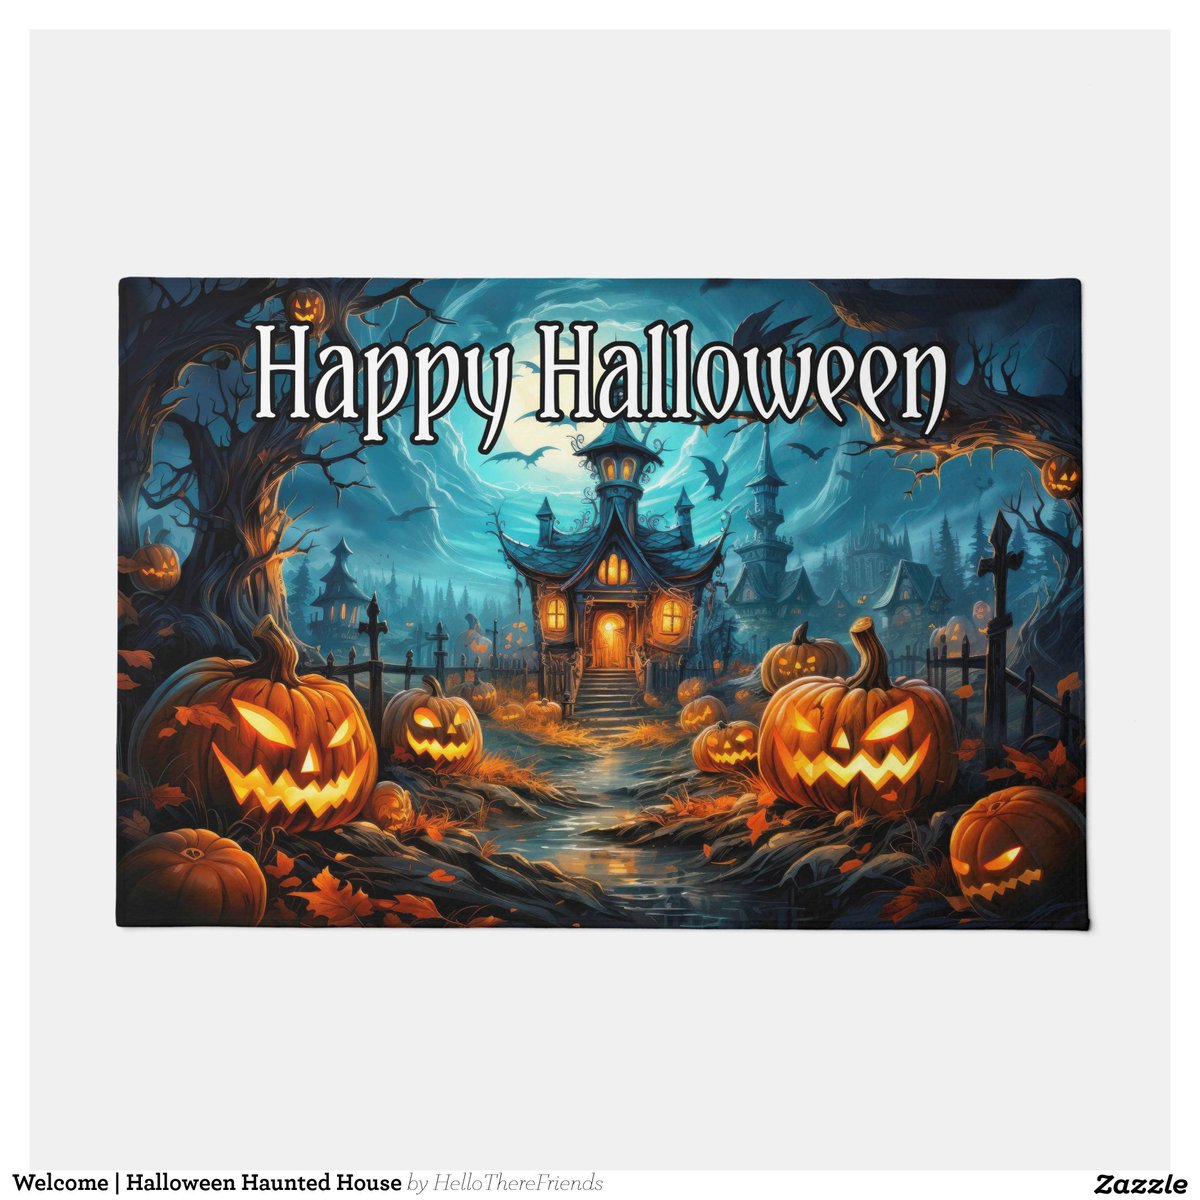 Welcome | Halloween Haunted House Doormat→zazzle.com/z/dnv5q2ny?rf=…

#WelcomeMat #WelcomeDoormat #HappyHalloween #Halloween2024 #TrickOrTreat #HauntedHouse #HomeDecor #HolidayDecor #Zazzle